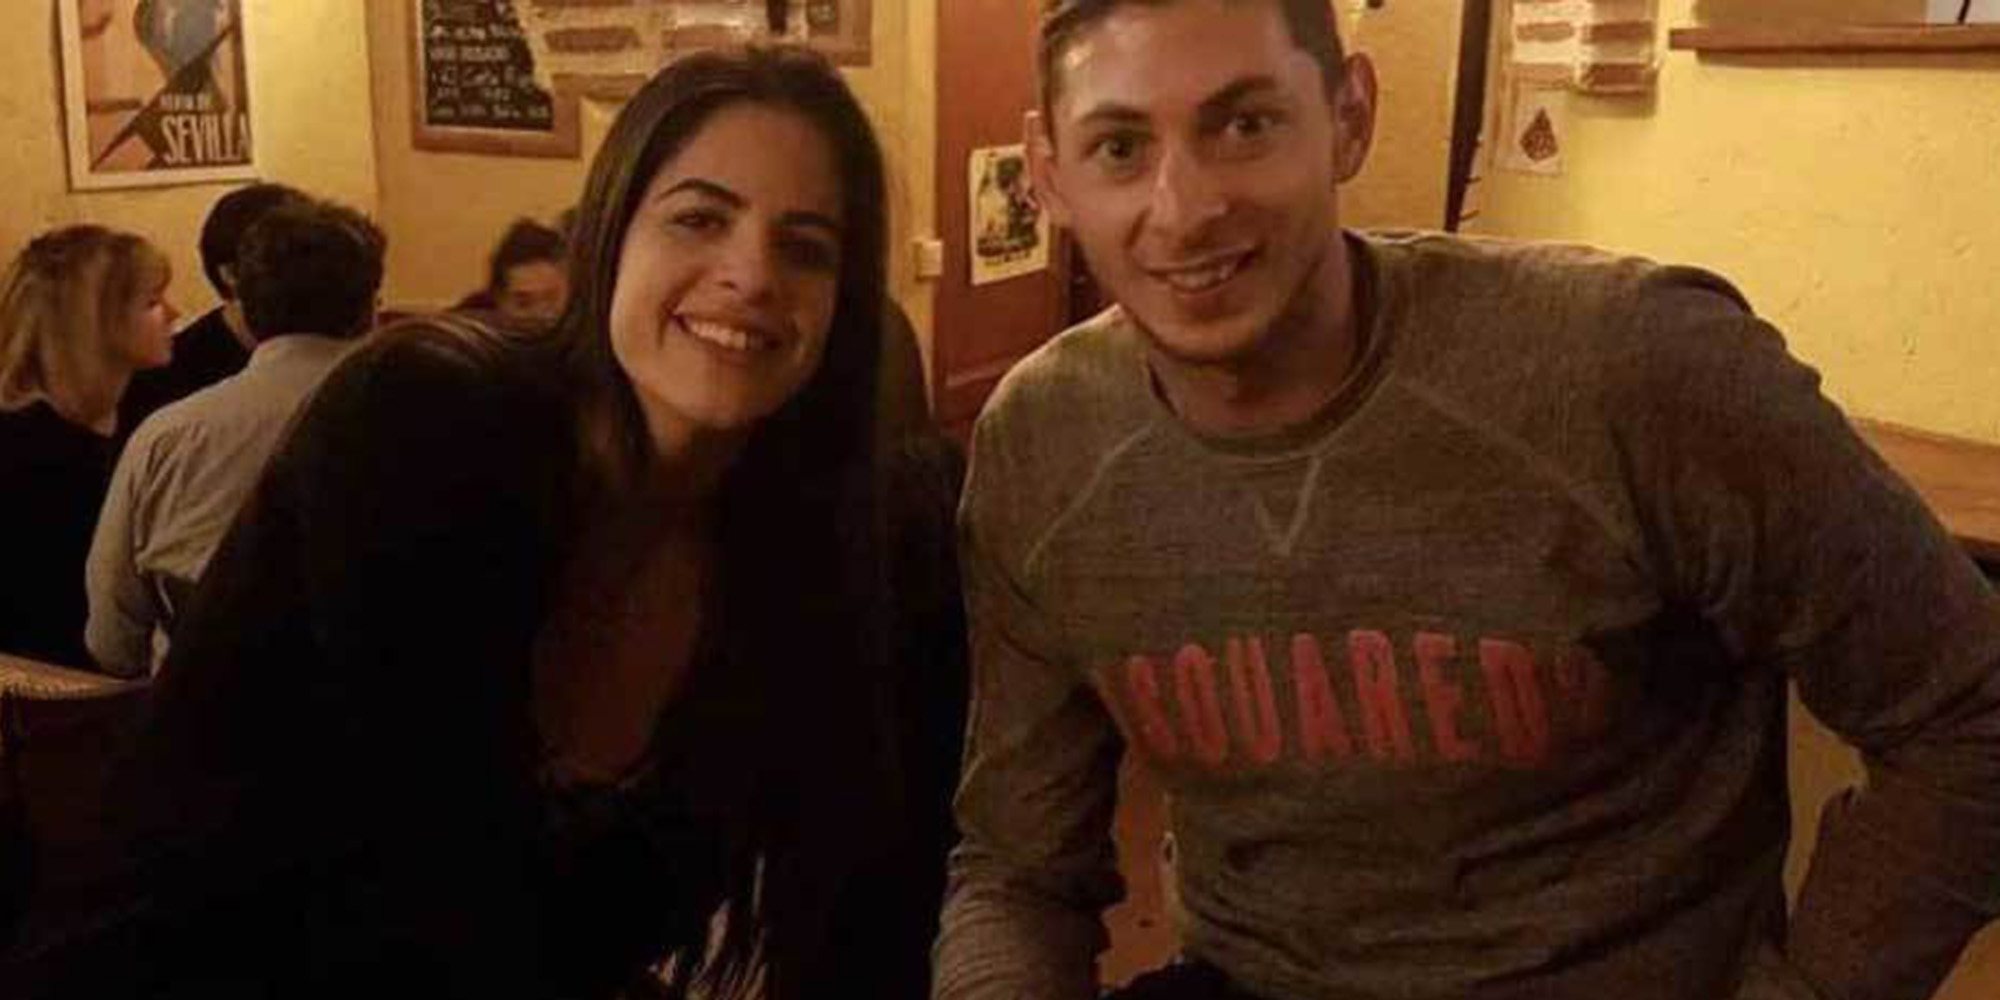 El emotivo detalle de la novia de Emiliano Sala en honor al futbolista